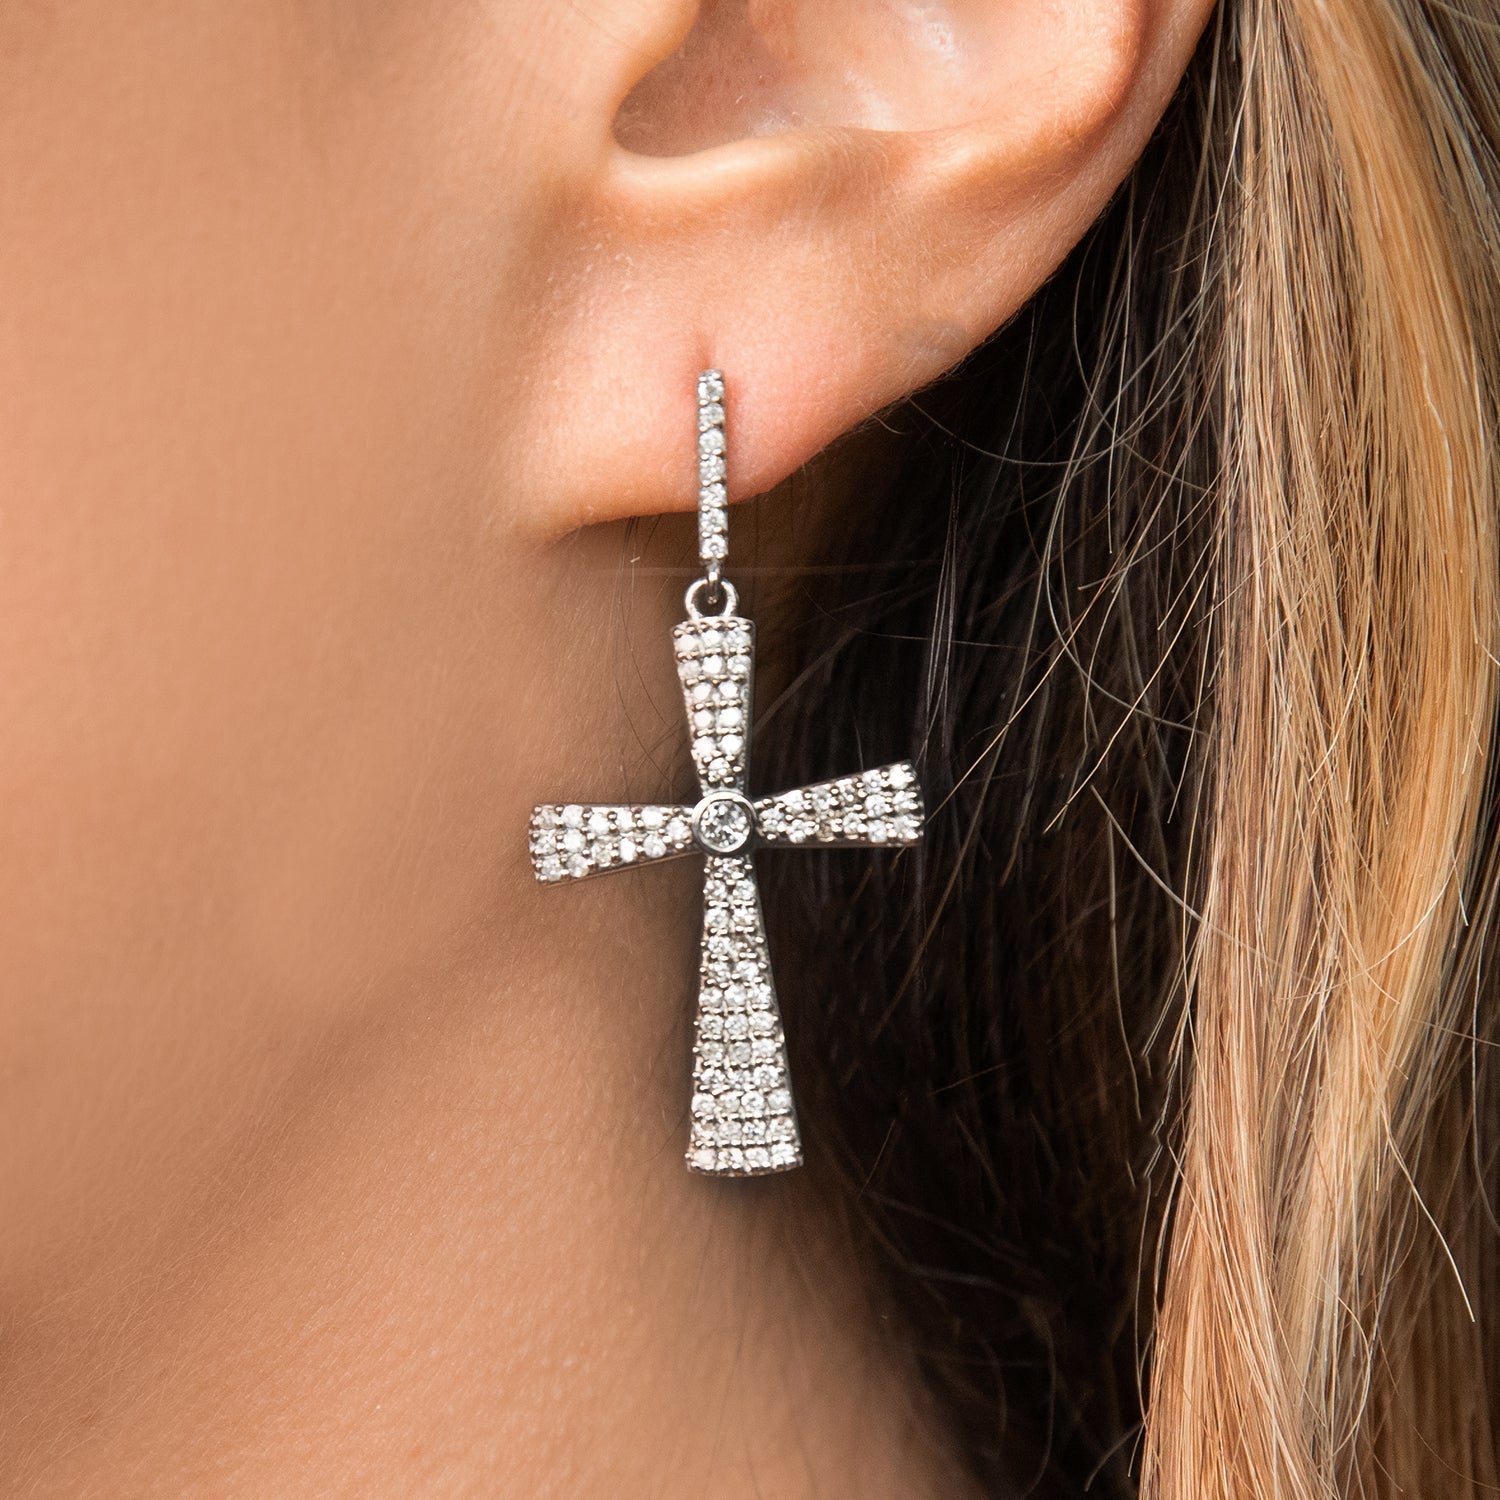 Bezeled Diamond Cross Drop Earrings E0000470 - TBird